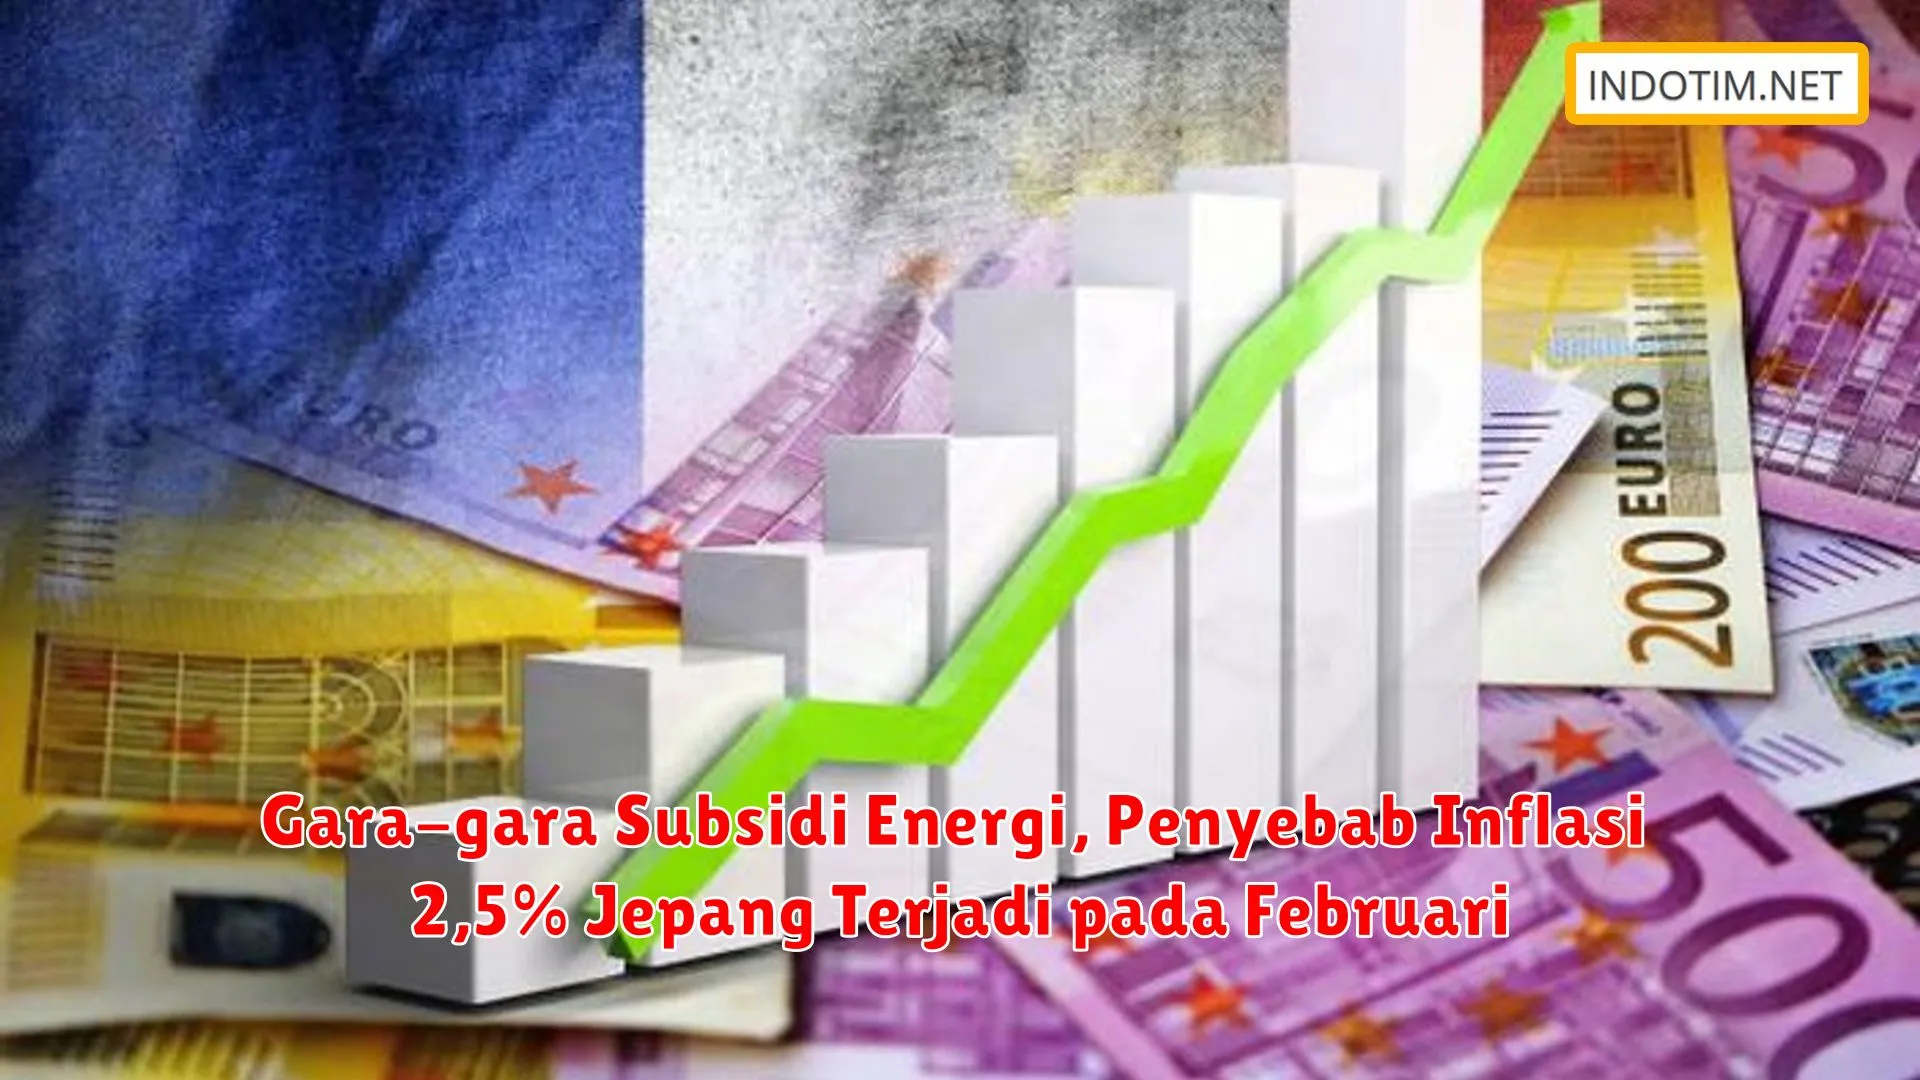 Gara-gara Subsidi Energi, Penyebab Inflasi 2,5% Jepang Terjadi pada Februari